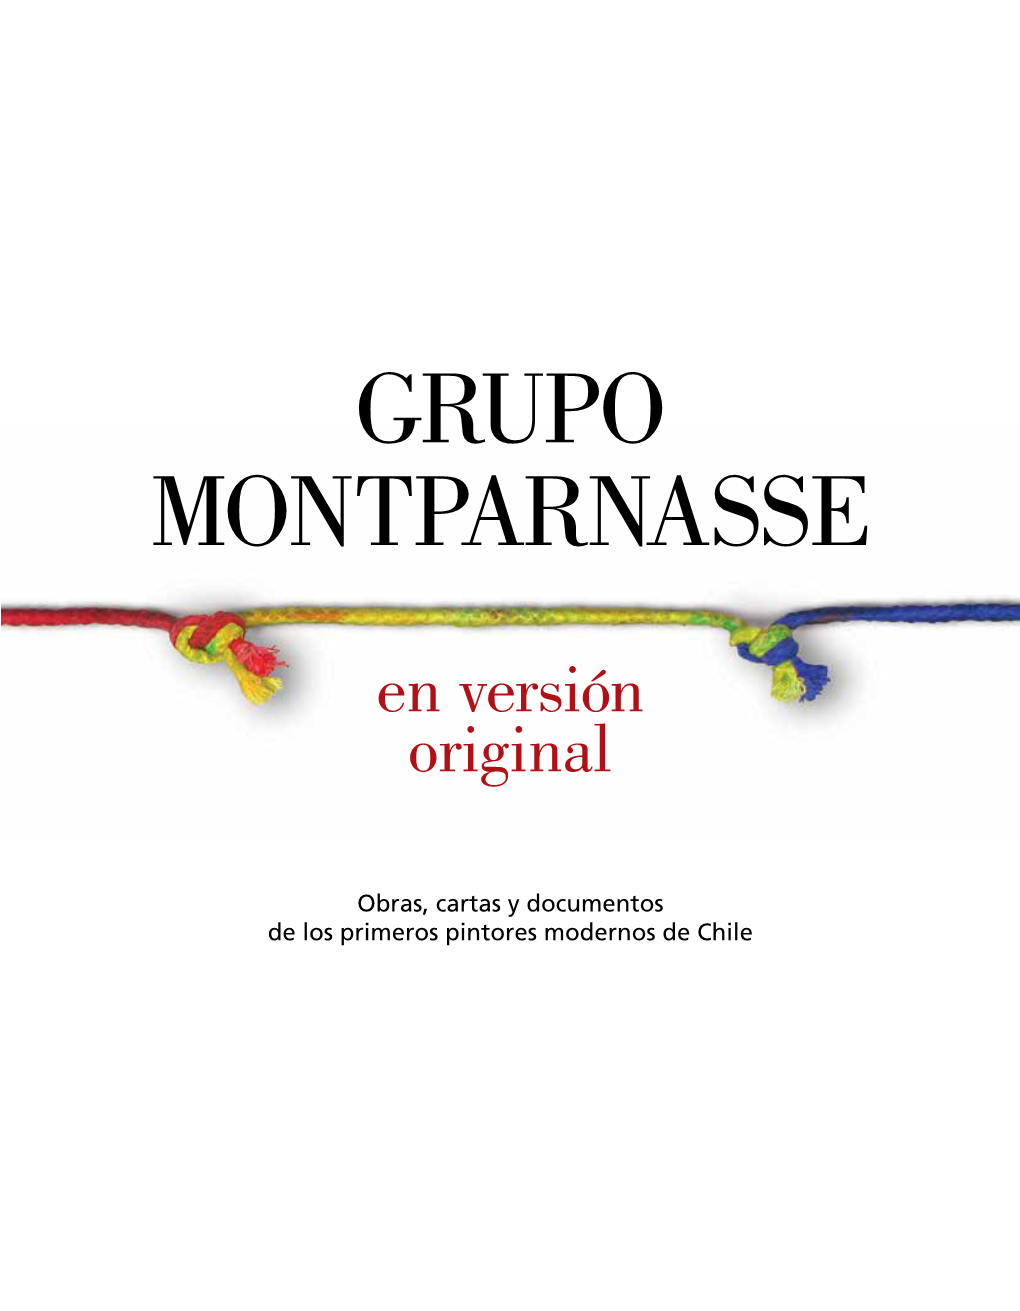 Grupo Montparnasse